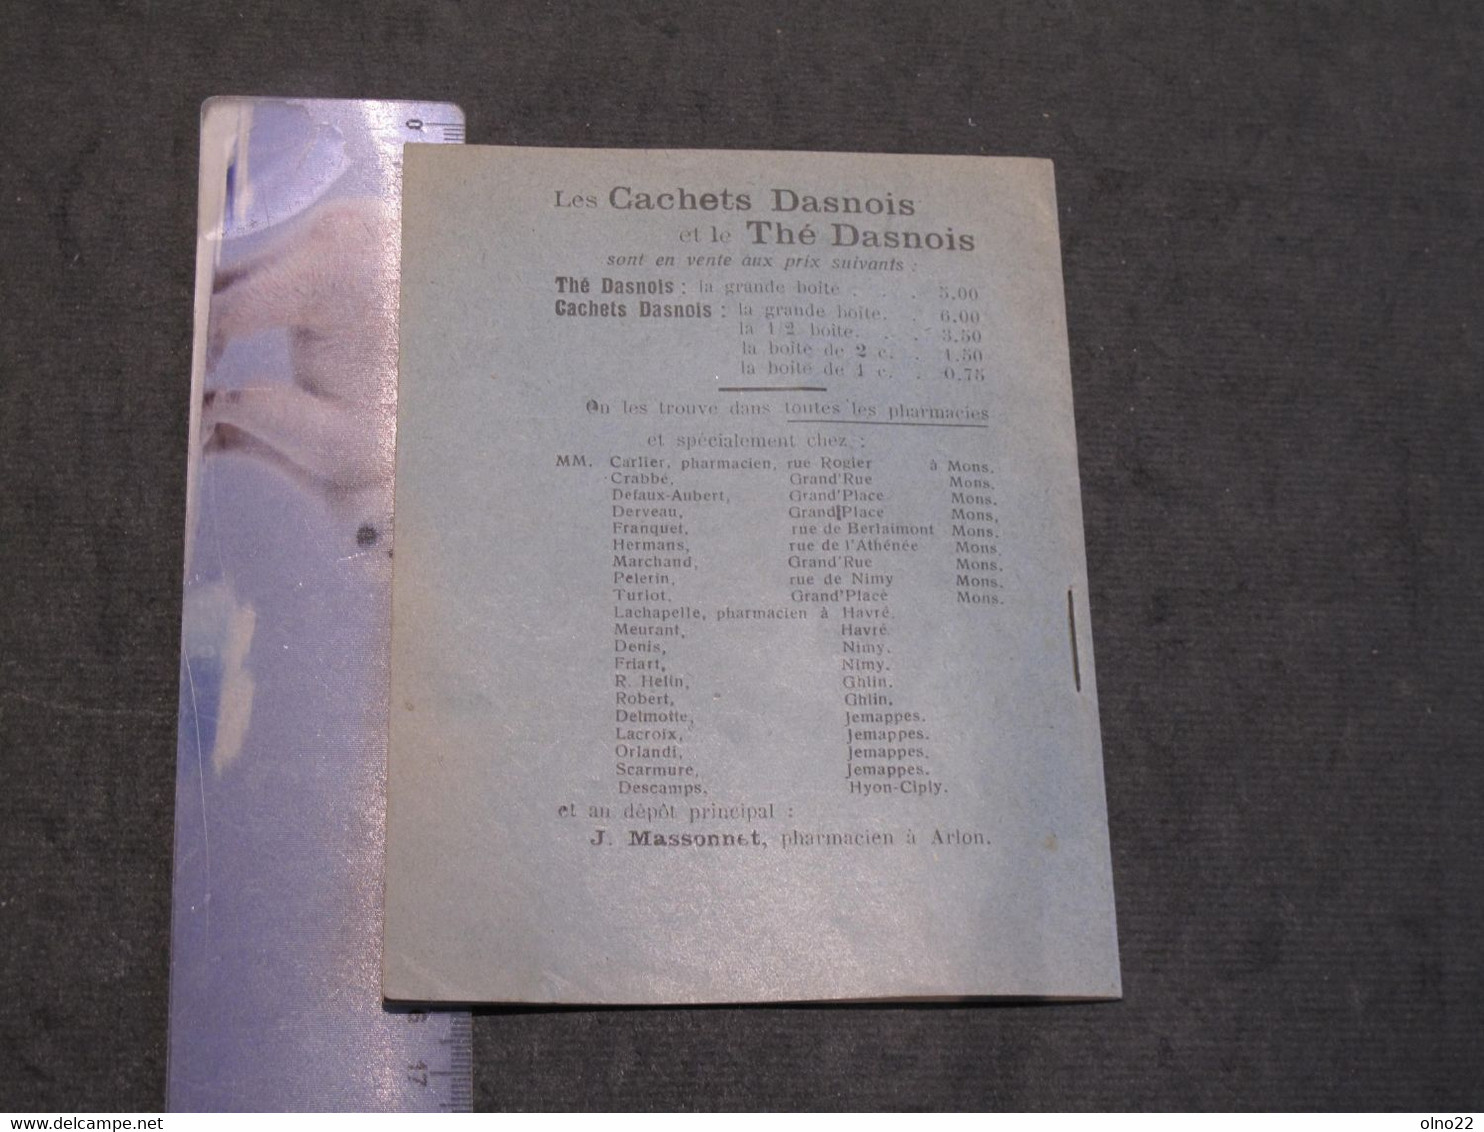 THE DASNOIS - CALENDRIER-ALMANACH 1928 - VOIR SCANS - Formato Piccolo : 1921-40